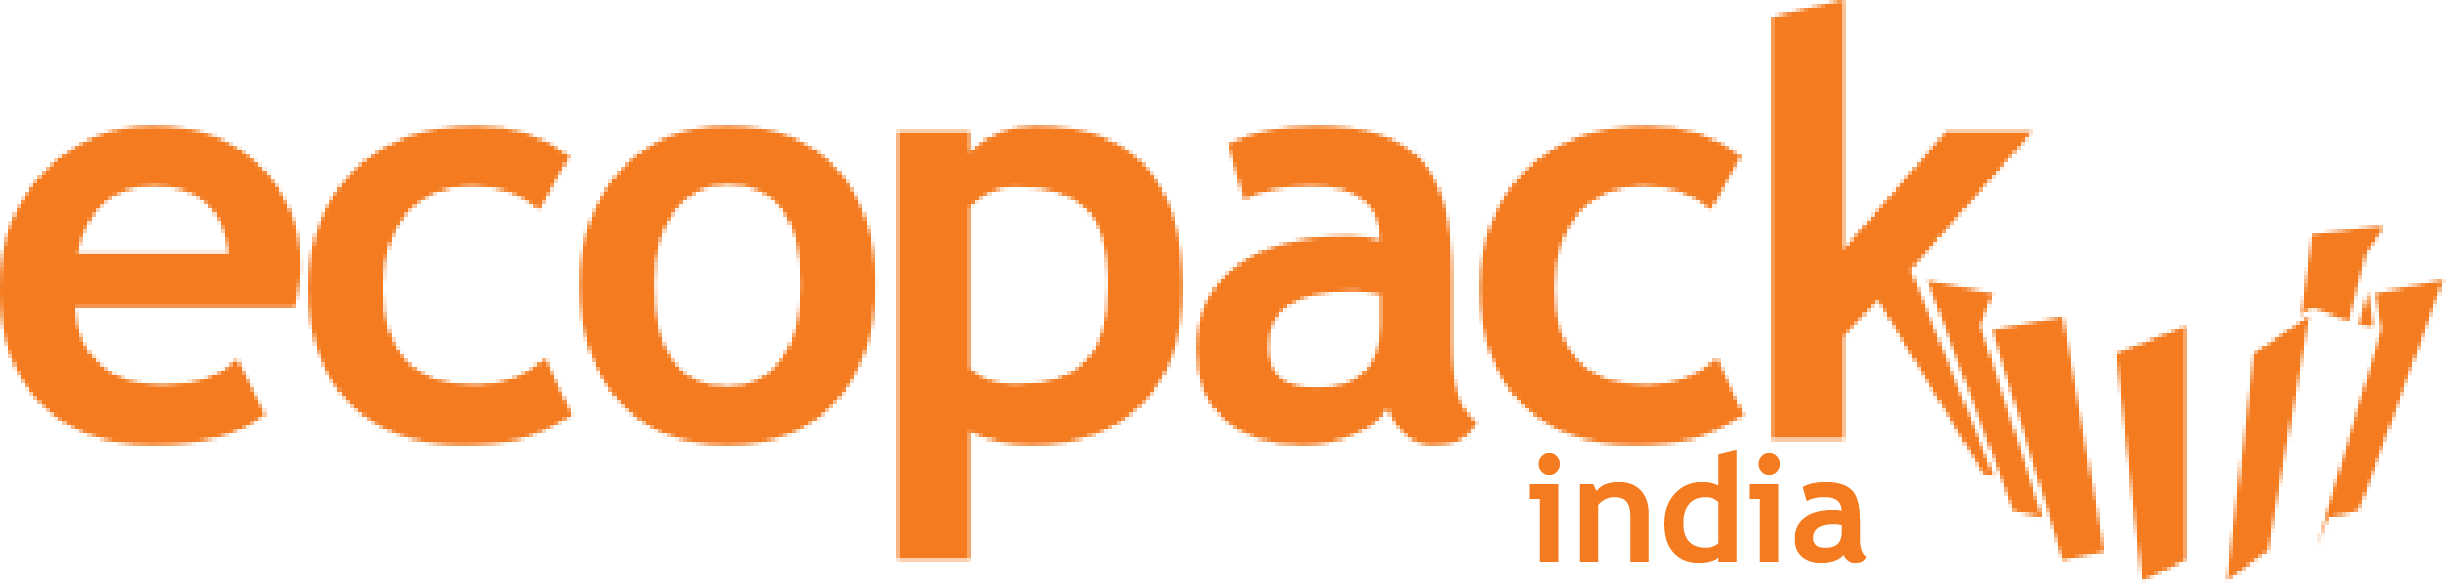 Ecopack India - logo